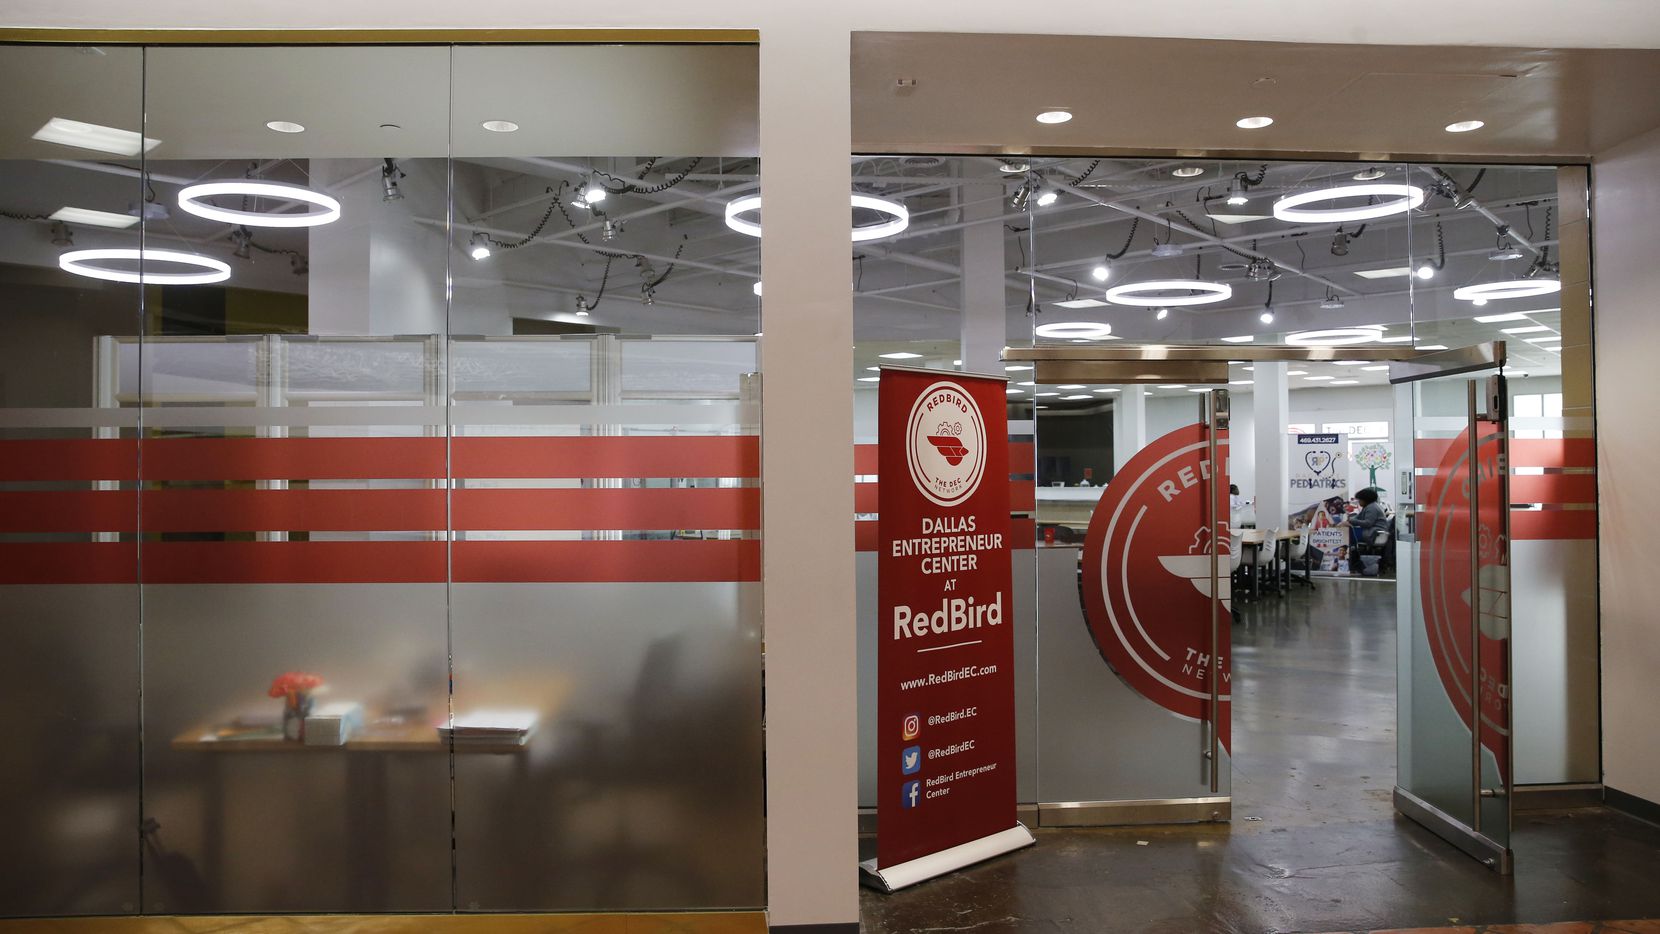 Dallas Entrepreneur Center at RedBird inside Red Bird Mall, also known as Southwest Center...